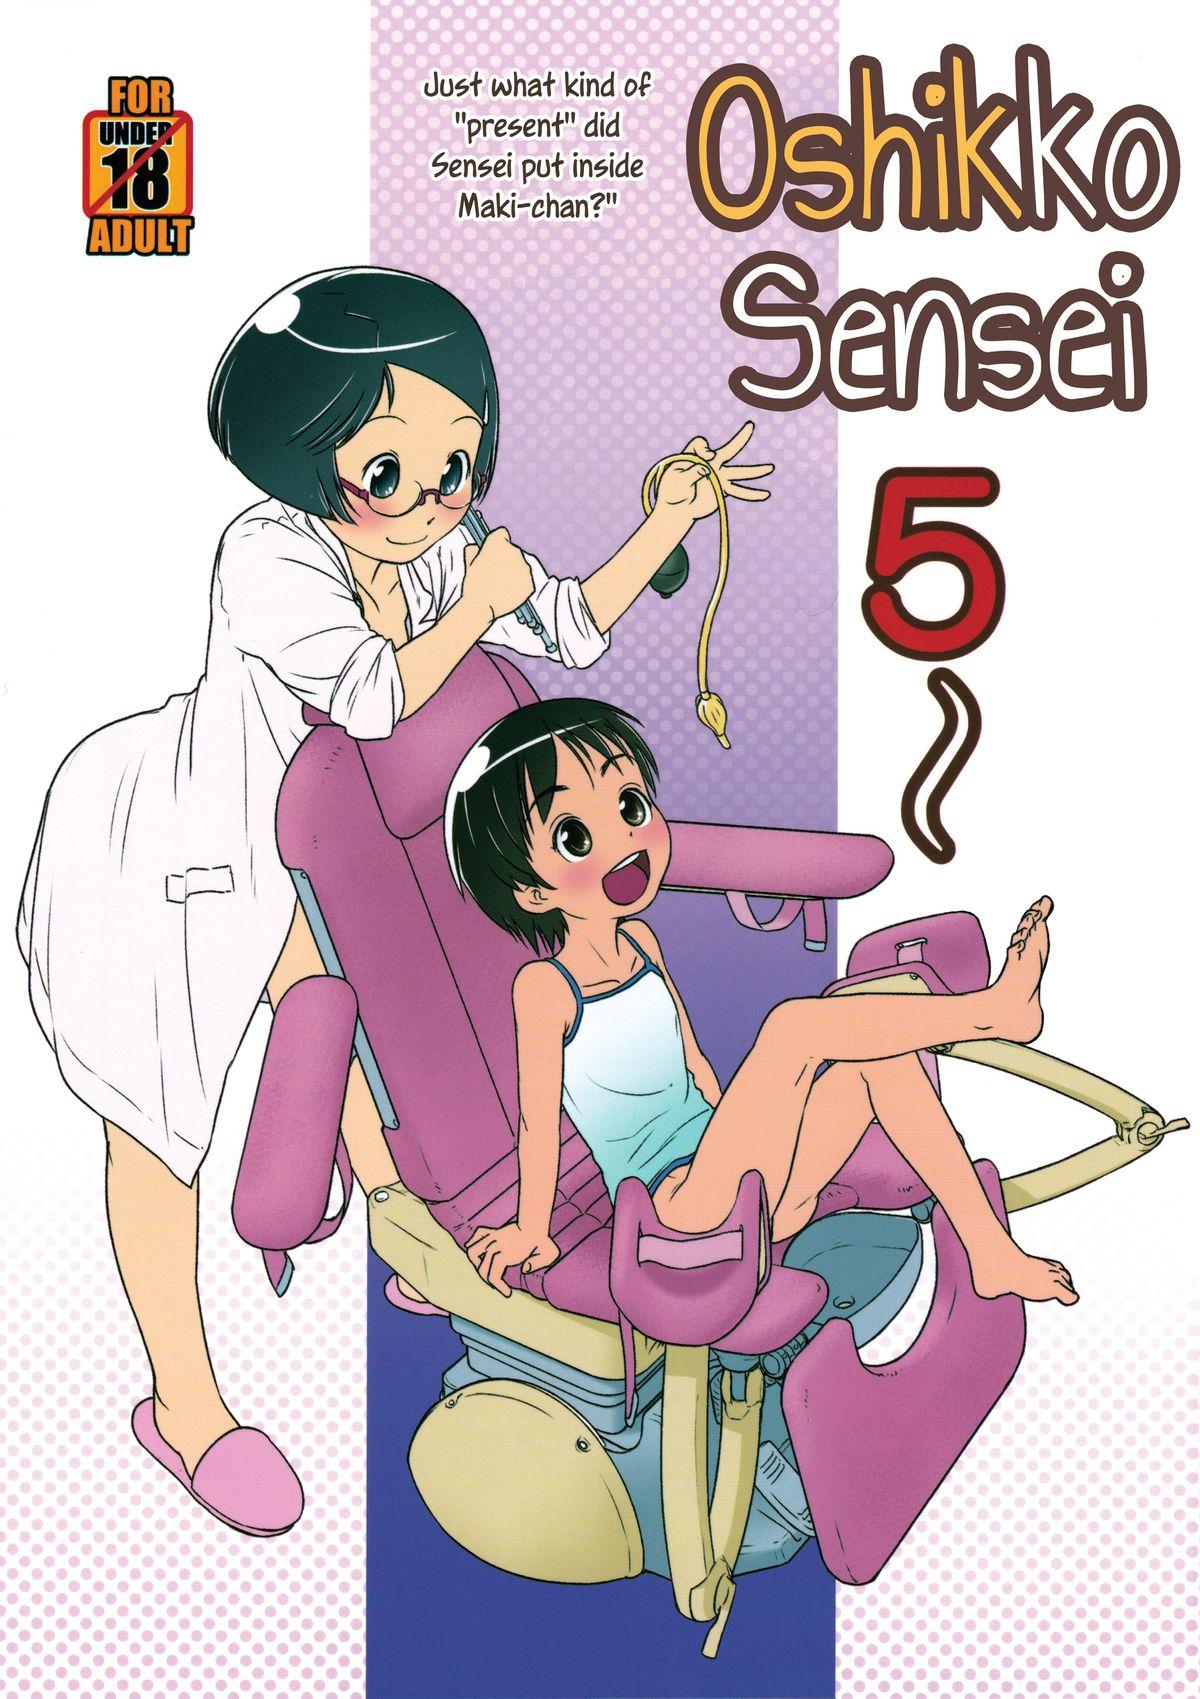 Oshikko Sensei 5 0